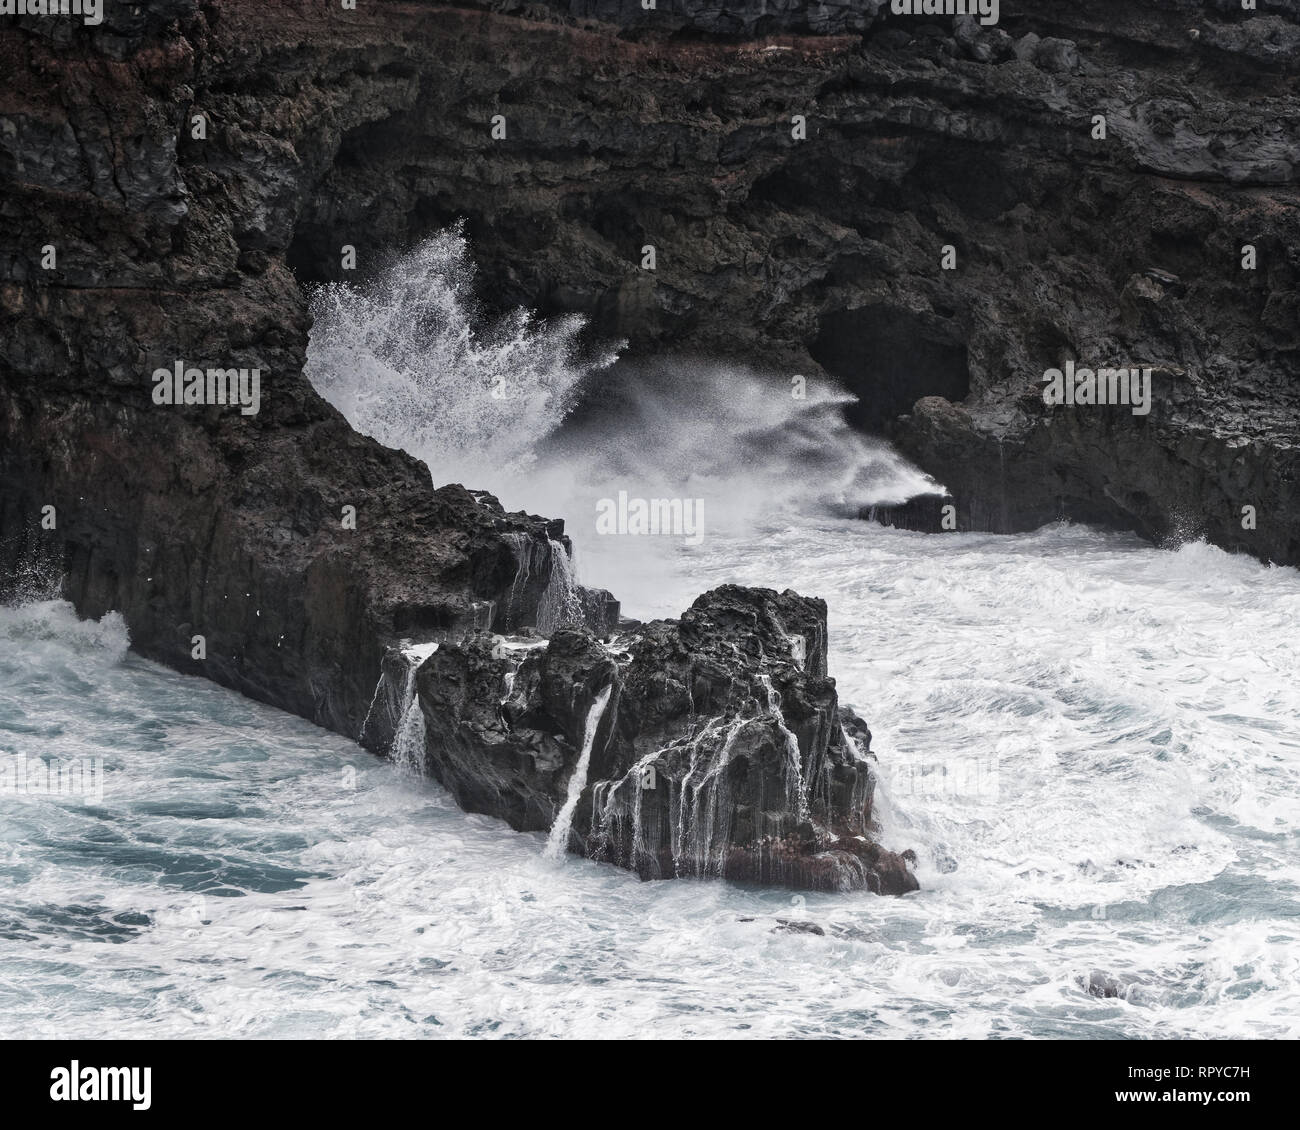 Eine Welle stürzt bei stürmischem Wetter auf einer felsigen Küste, Gischt spritzt, Wasser Bewegung in lange Belichtung, Detail - Ort: Spanien, Kanarische Inseln, La Palma Stockfoto